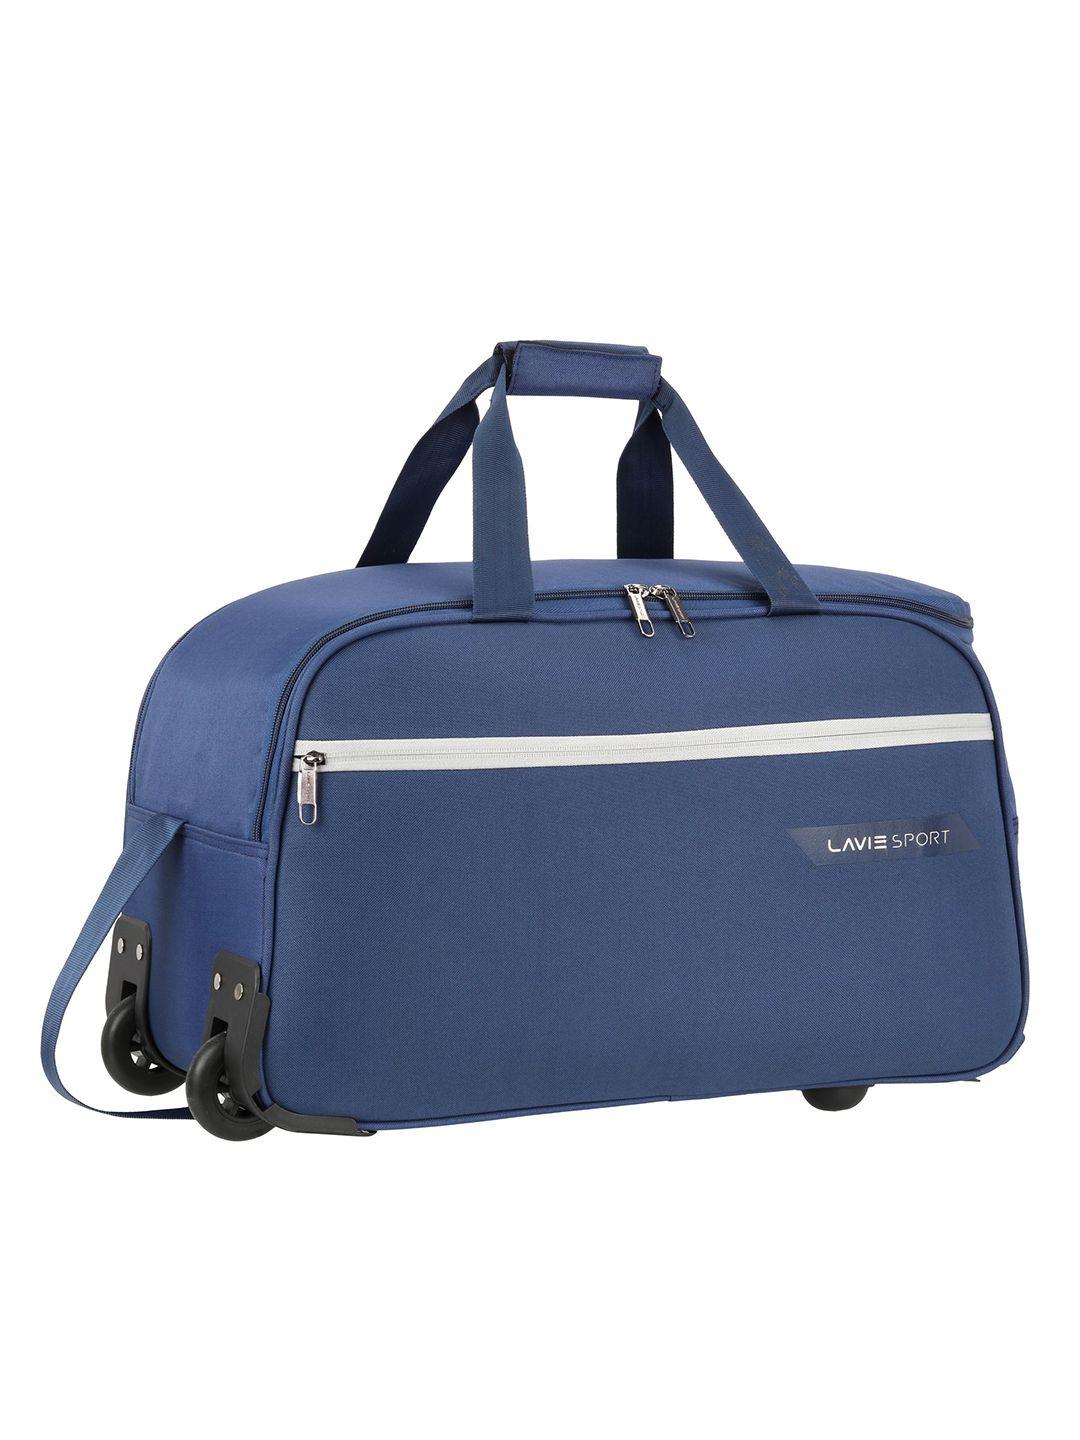 lavie sport unisex navy blue wheel cabin size duffel bag